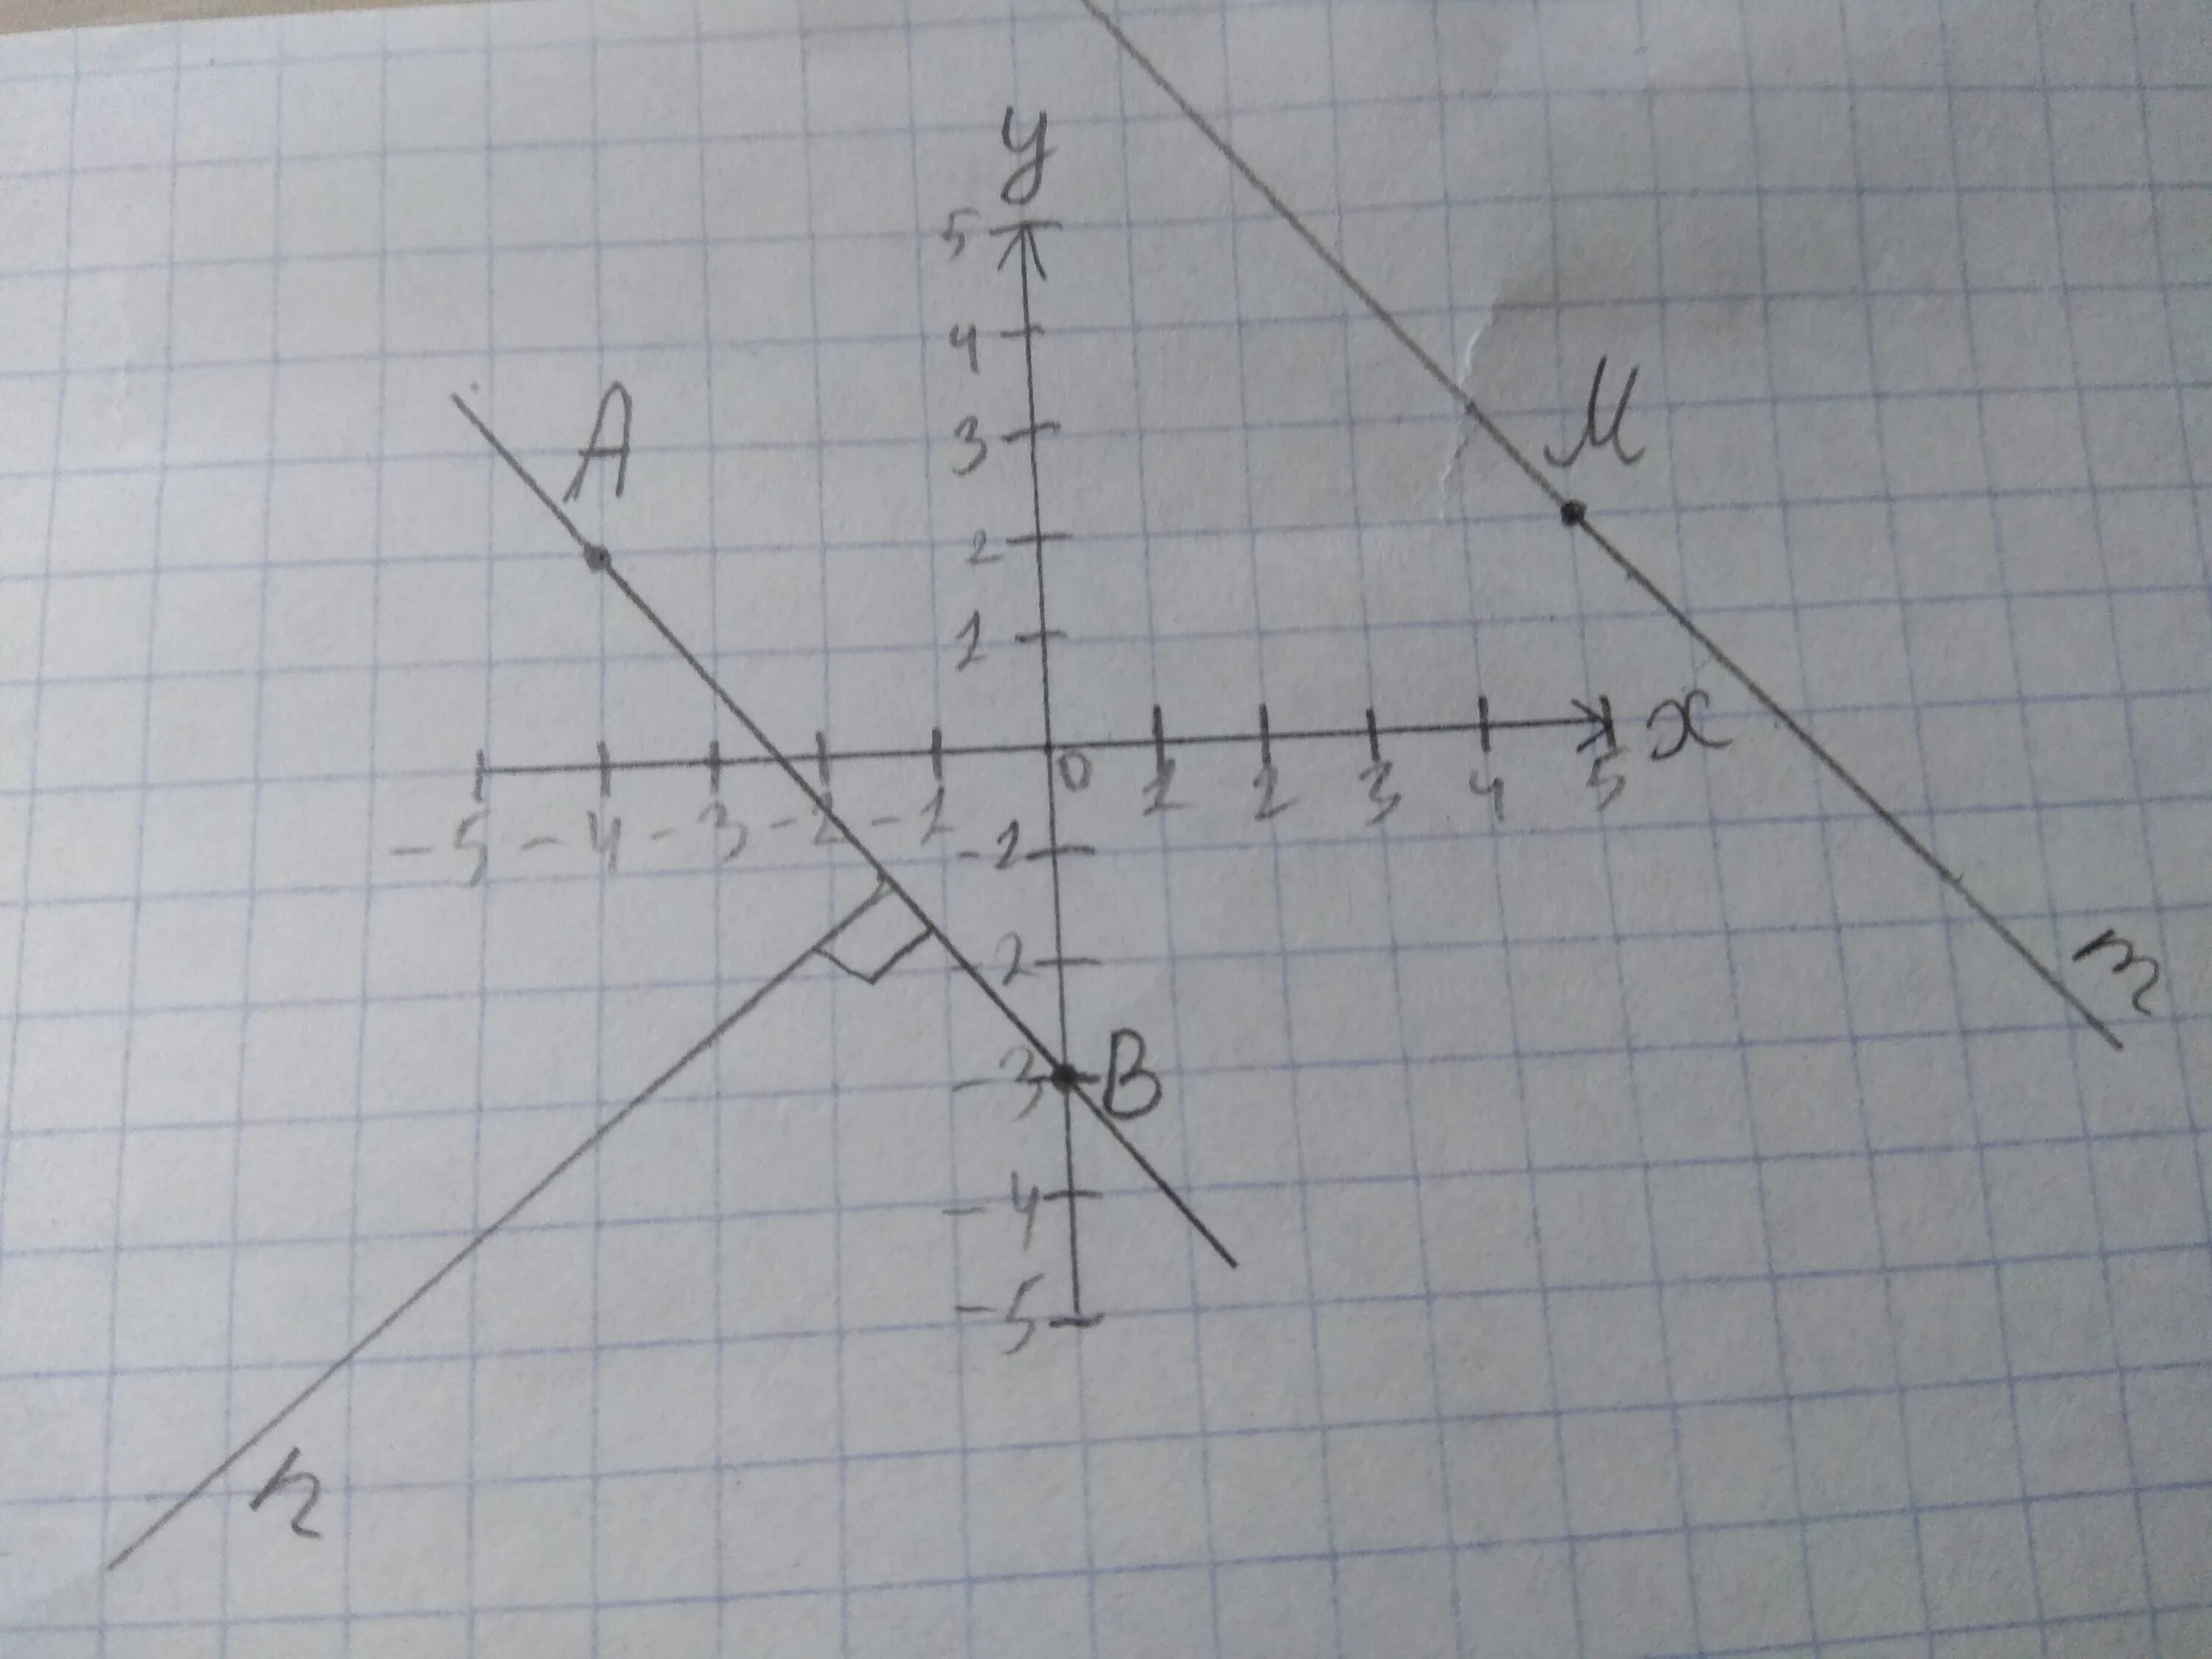 Отметьте на координатной плоскости точки 2 5. Отметьте на координатной плоскости точки а -4 2. Отметь на координатной плоскости точки а -4 2. Отметьте на координатной плоскости точки а -4. Отметьте на координатной плоскости точки а -3.